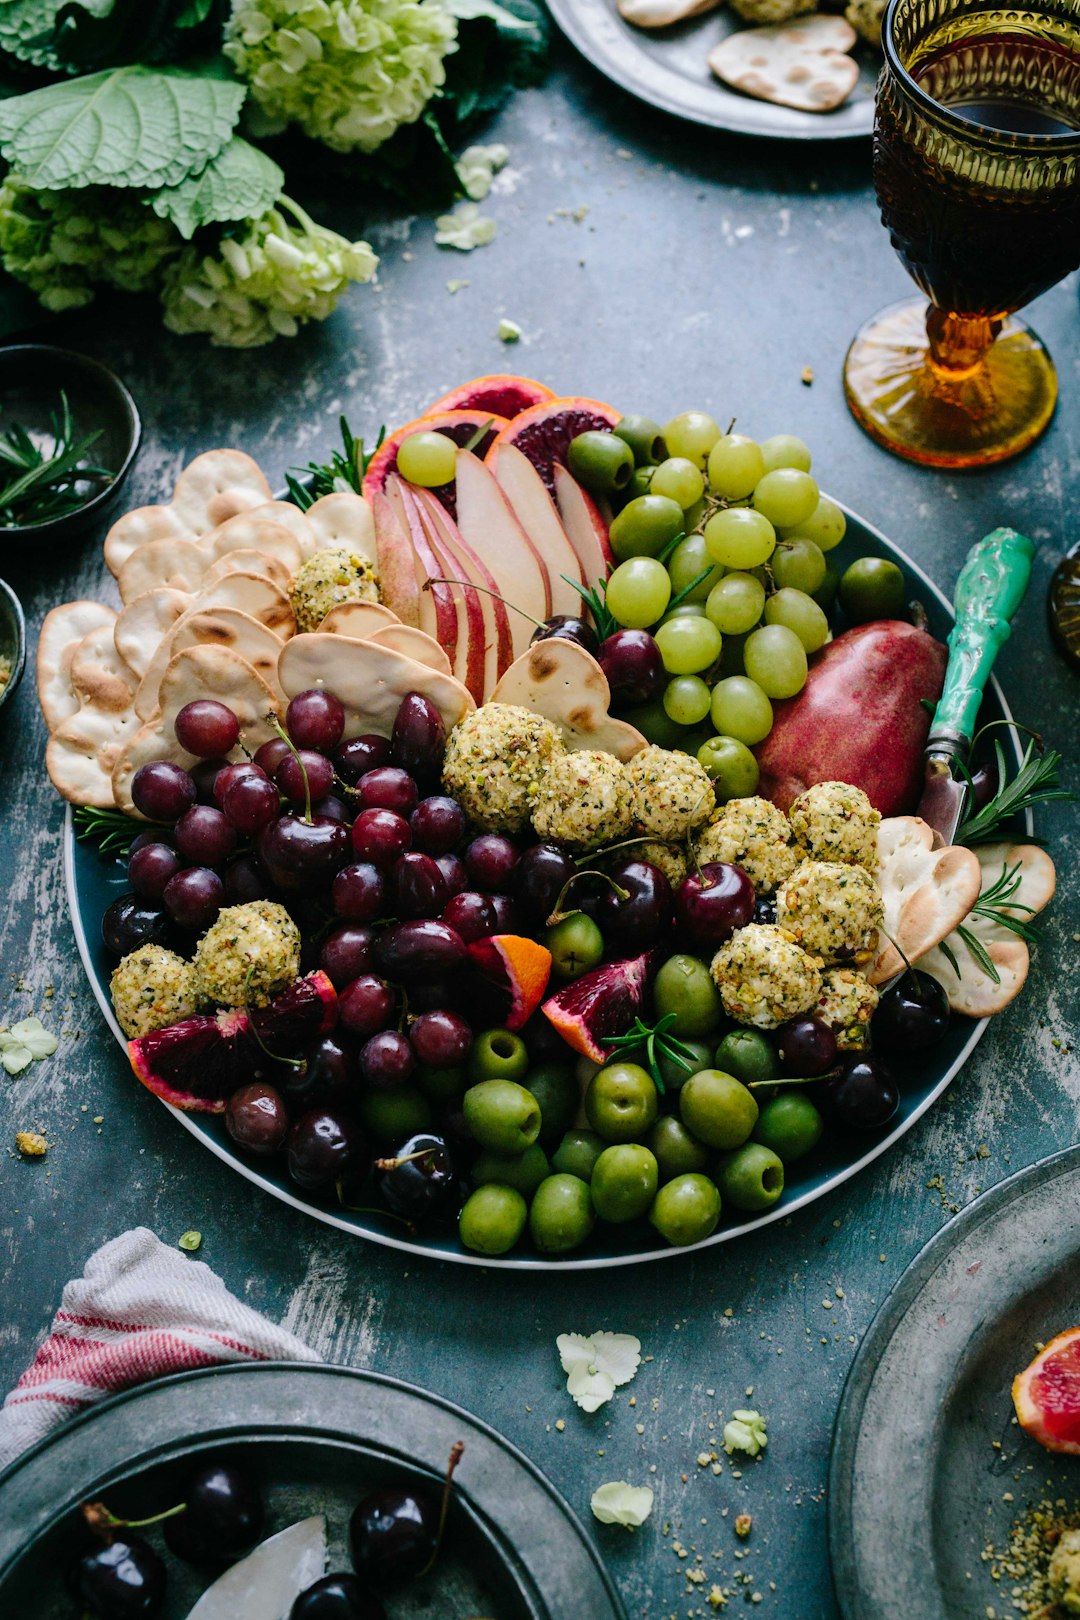 A fruit platter